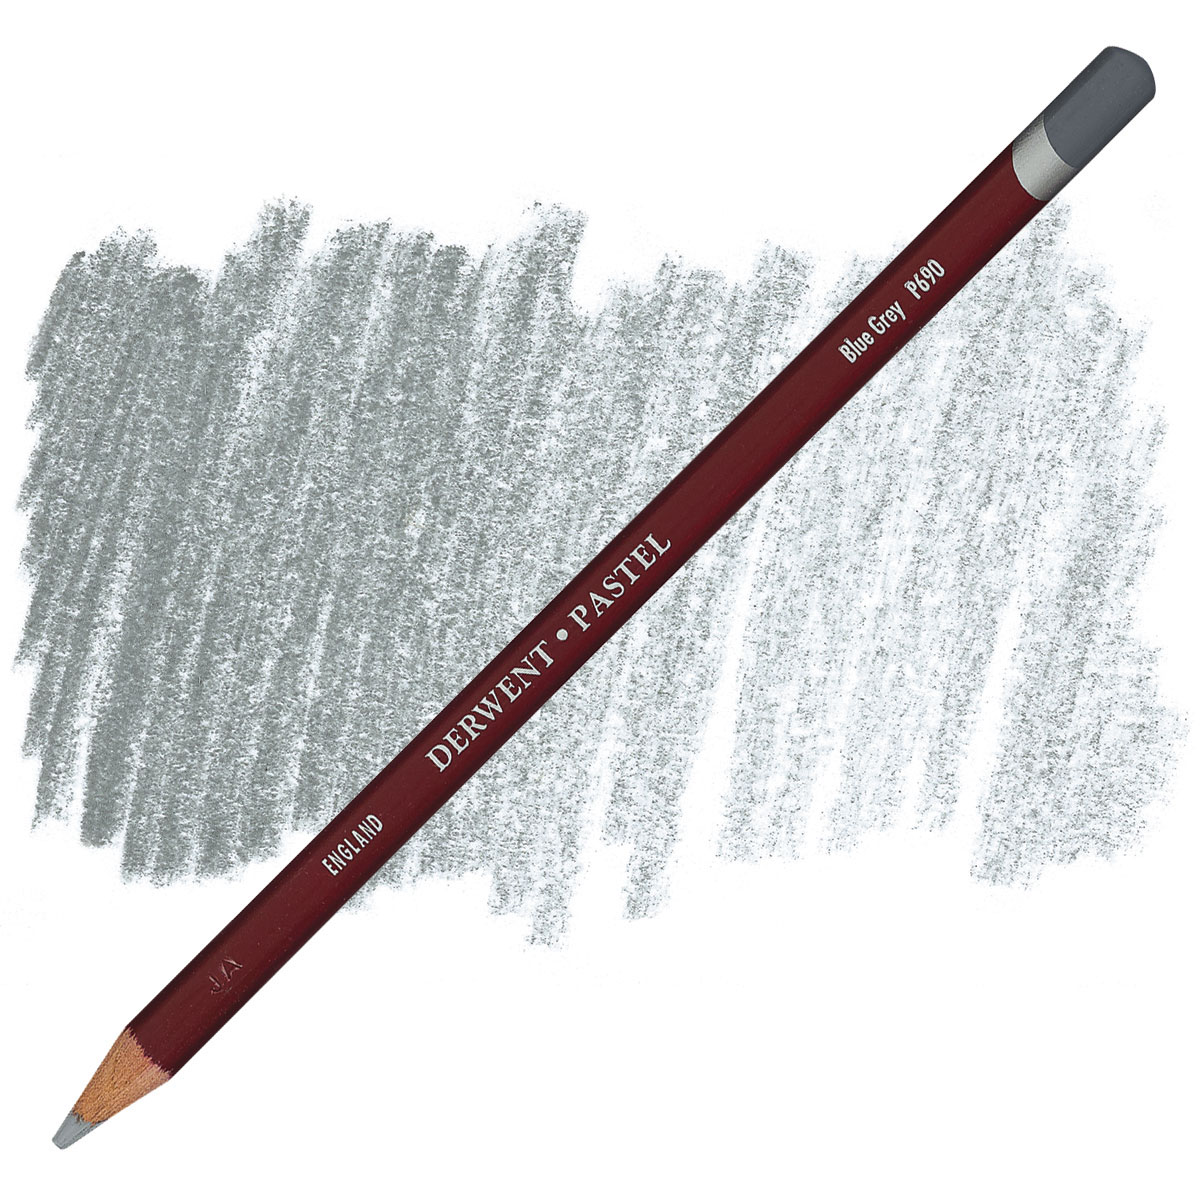 Derwent Pastel Pencil Set, Assorted Colors, Set Of 12 Pencils